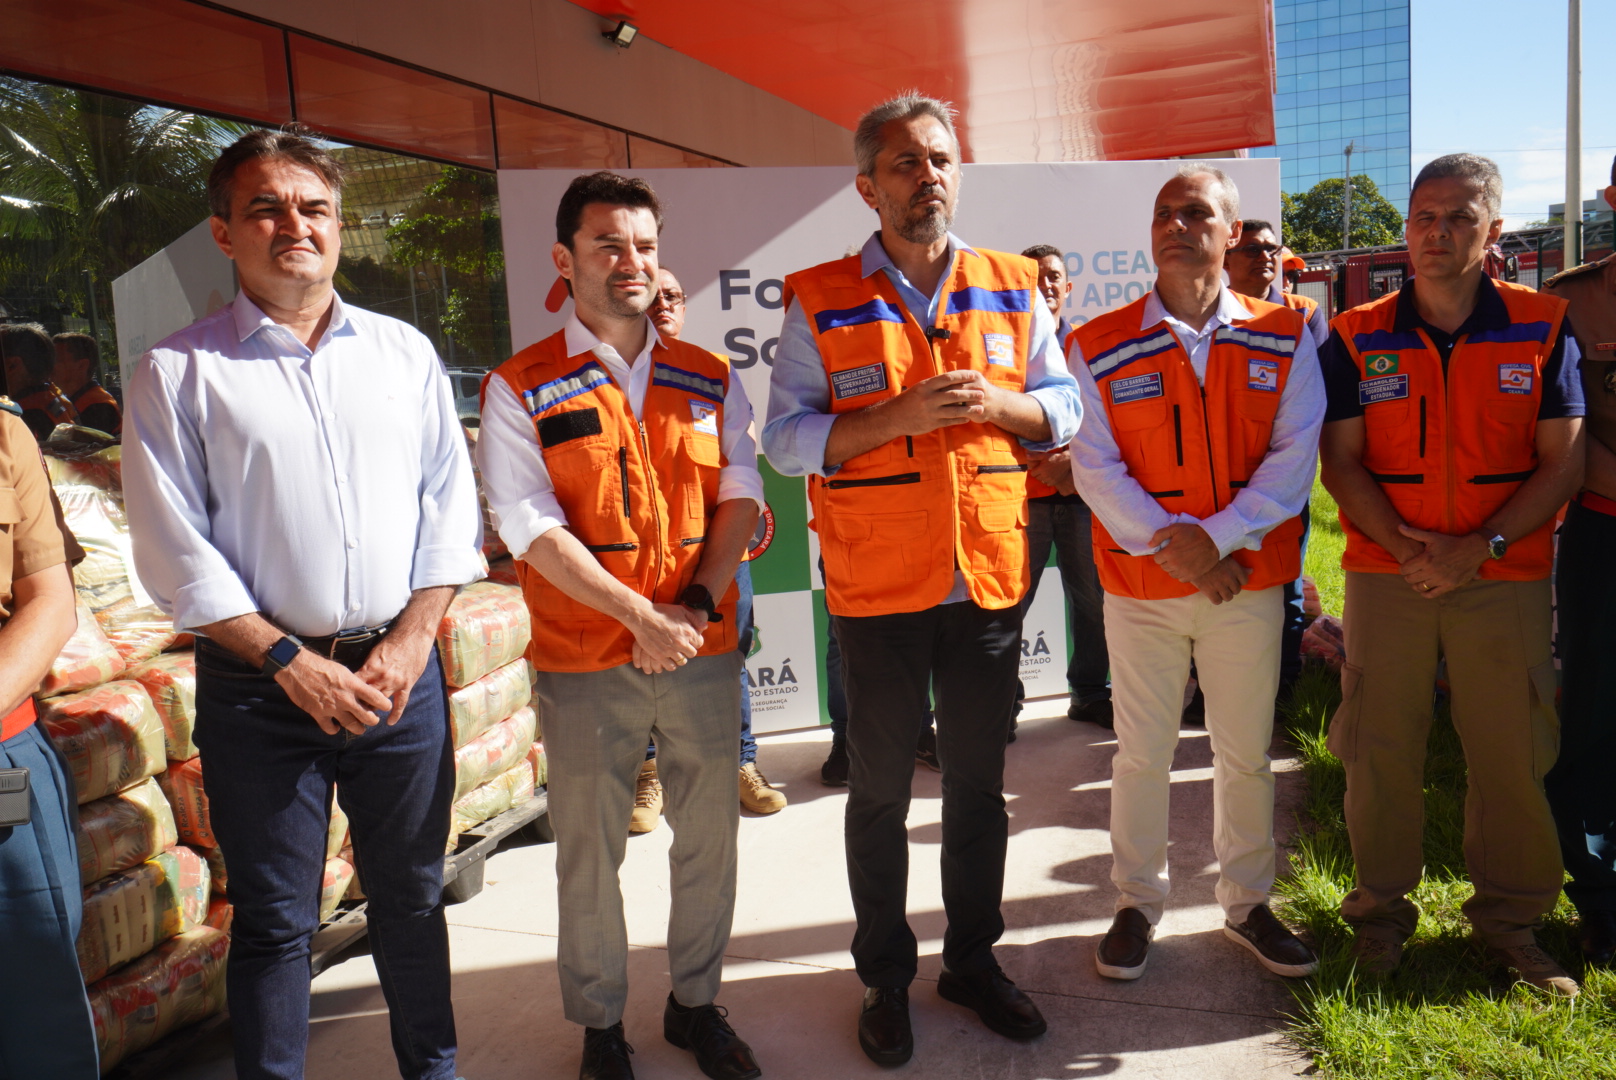 Em visita a local de doação e terminal de cargas do Aeroporto de Fortaleza, Elmano de Freitas reforça: “Estamos juntos para ajudar o Rio Grande do Sul”